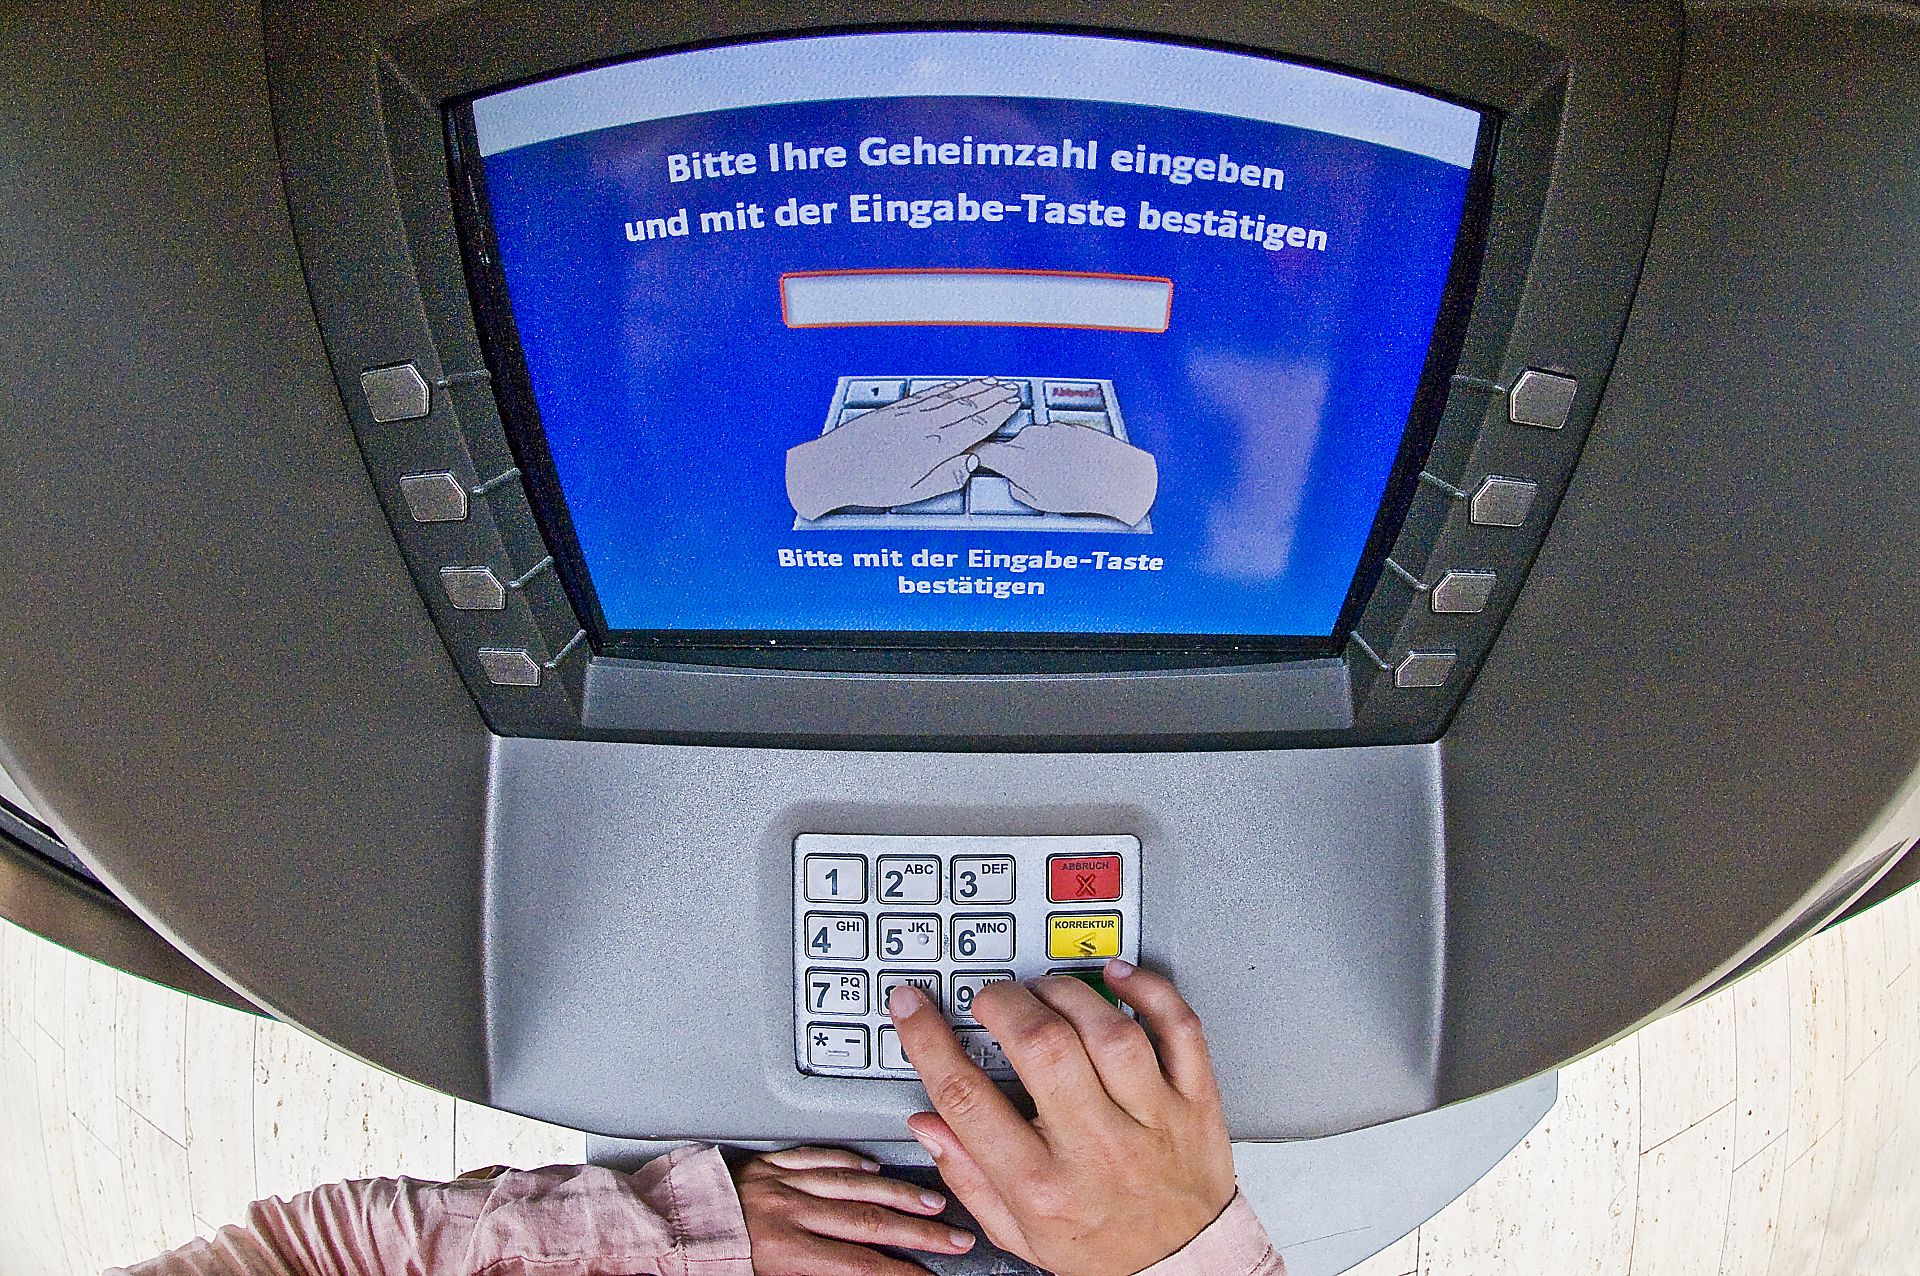 PIN-Eingabefeld eines Geldautomaten.